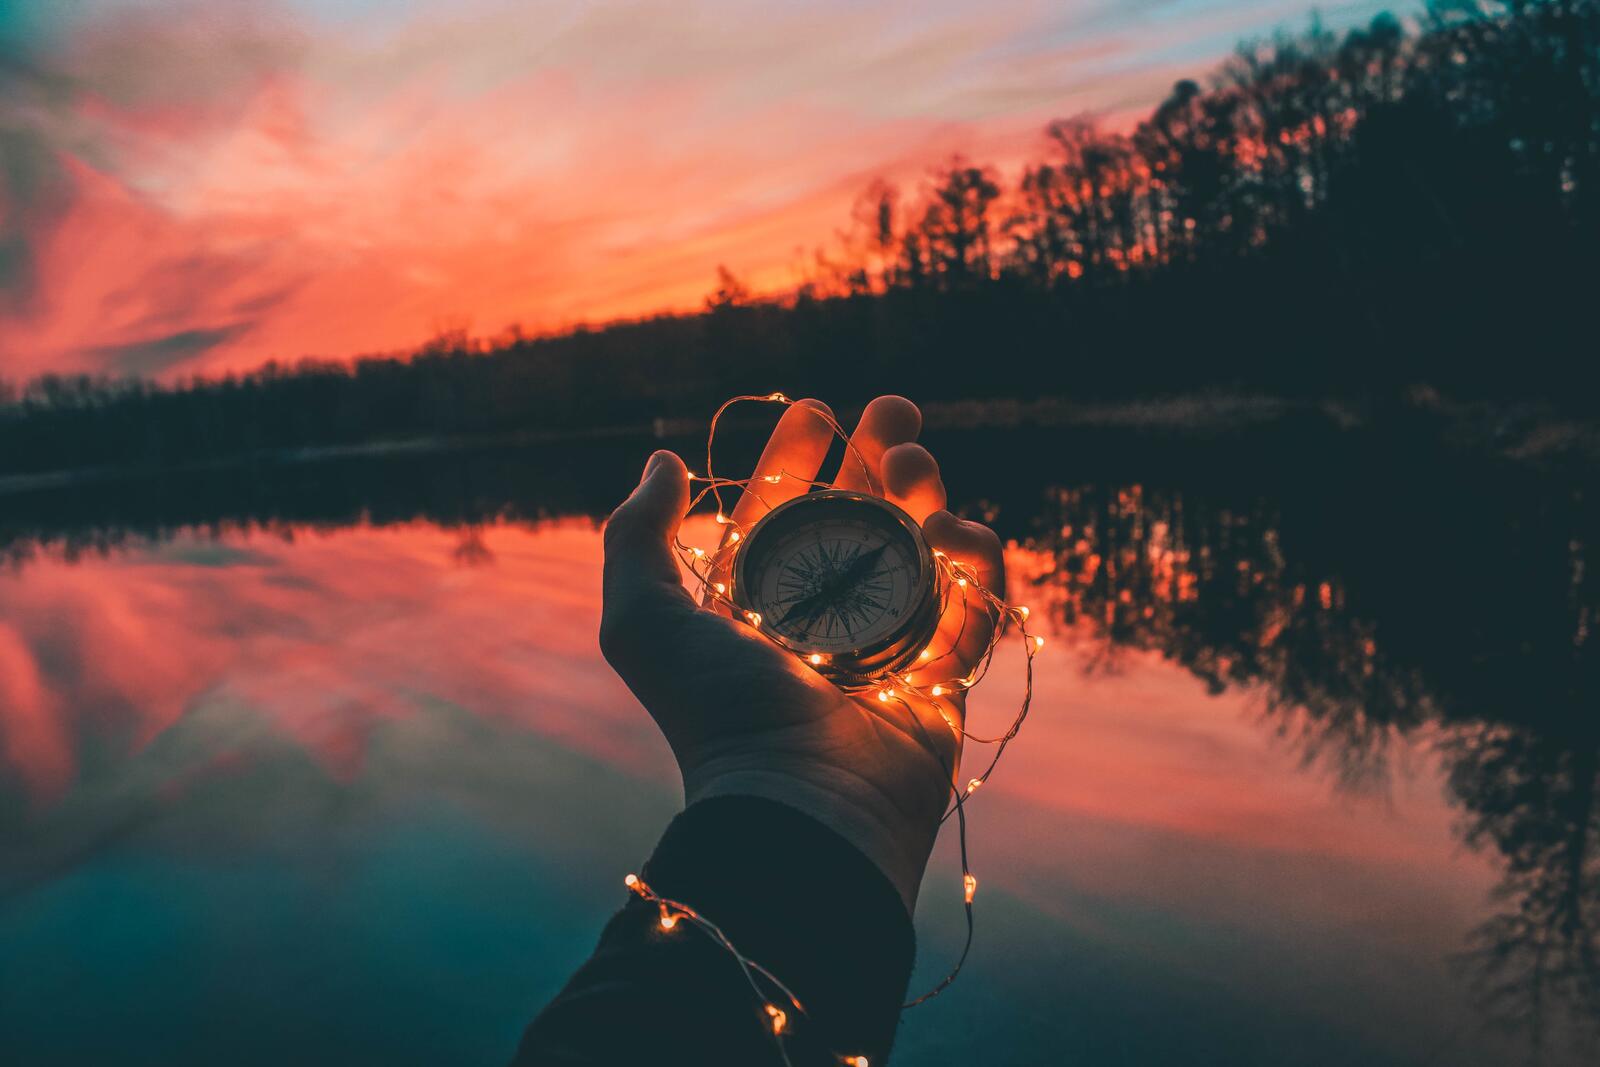 Бесплатное фото Компас в руке на фоне озера с гирляндой